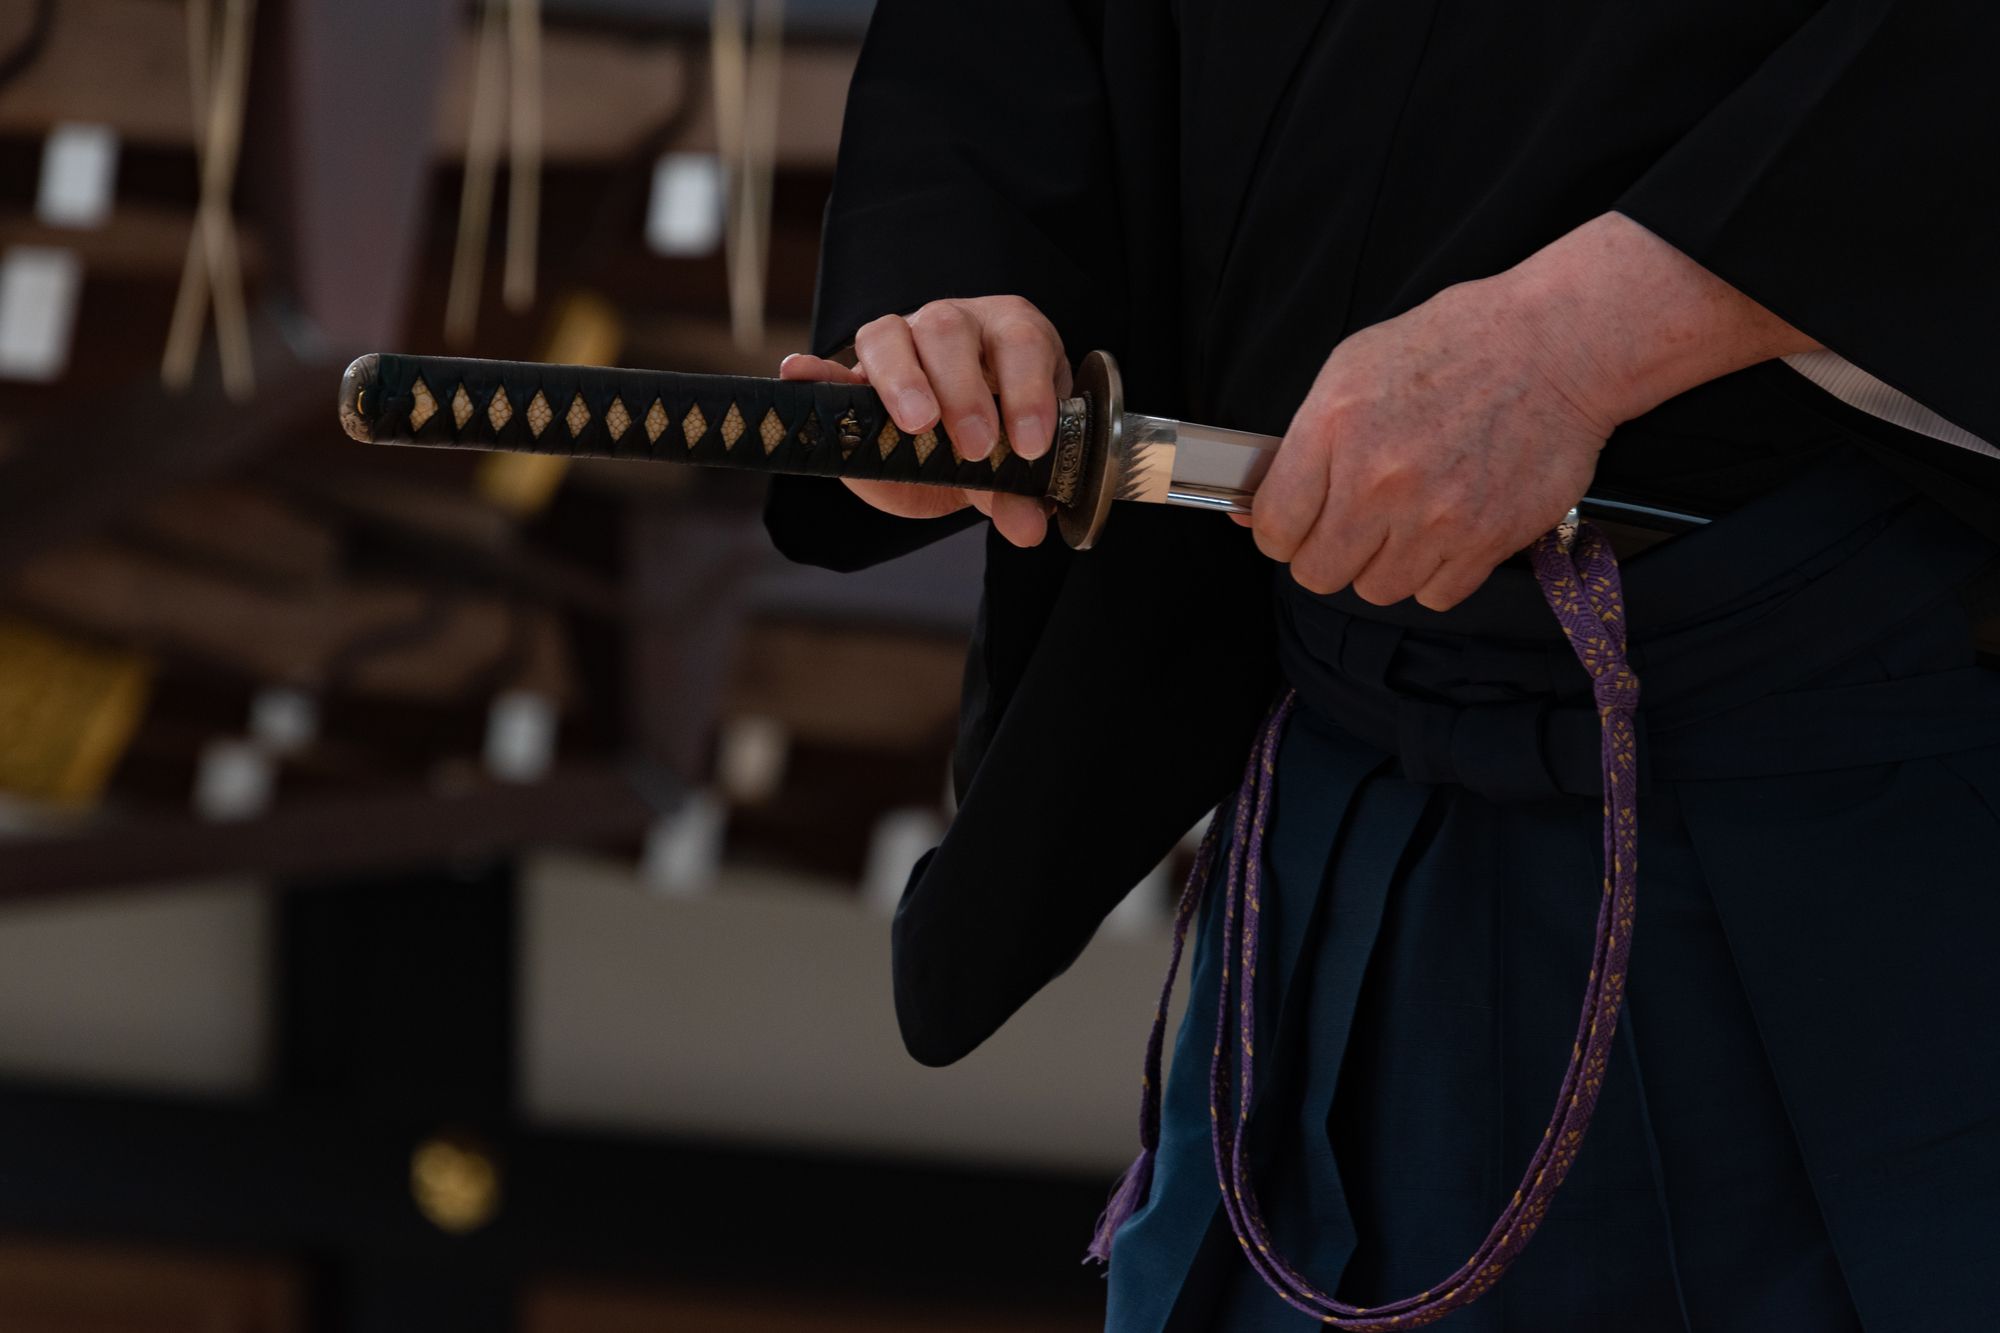 日本刀の柄にはどのような種類がある 日本刀買取 刀剣買取業者おすすめランキング ジャンル別4選で紹介